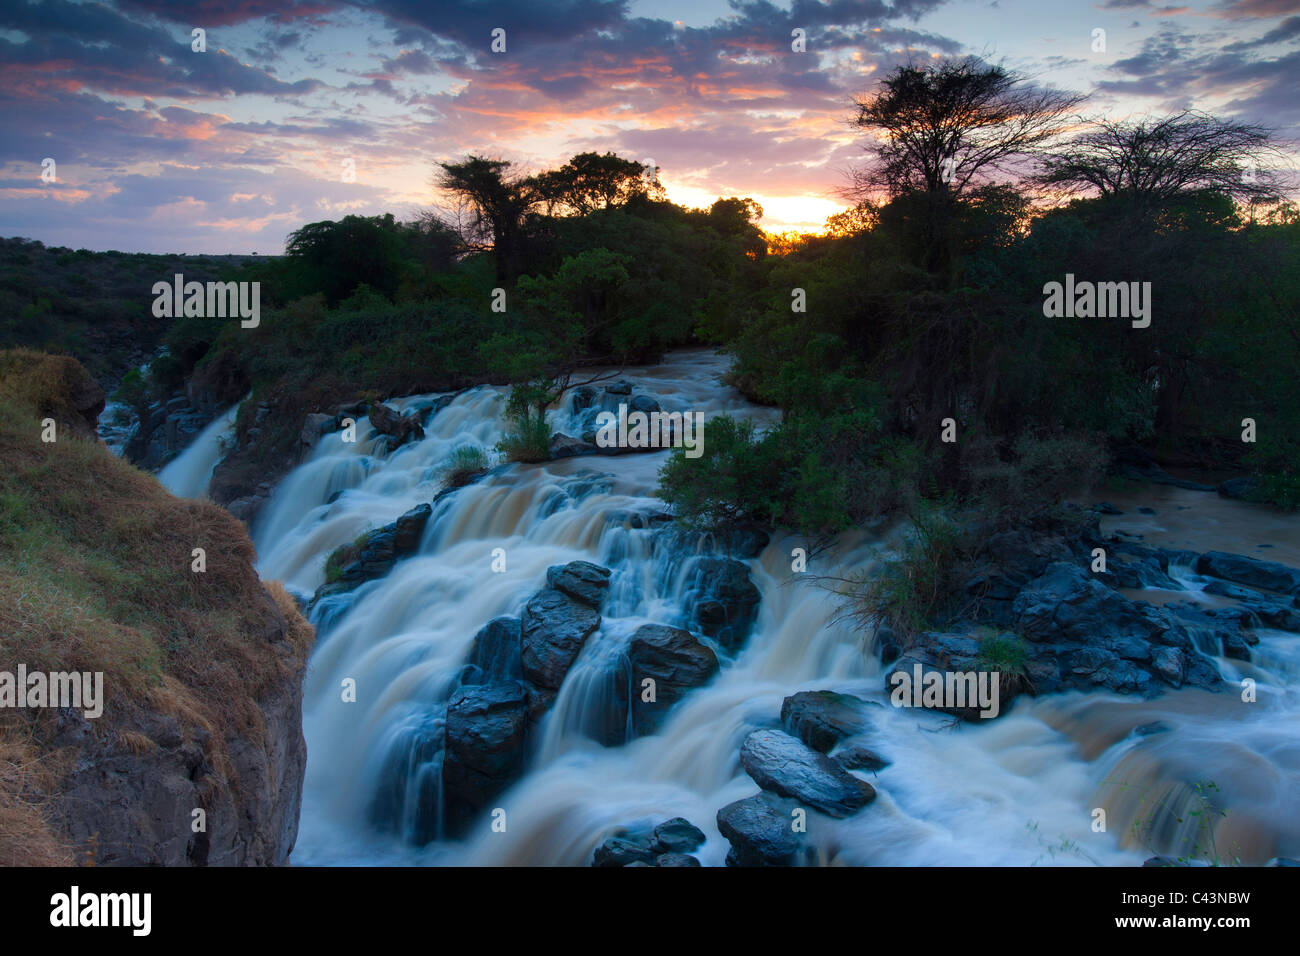 Inondata, del caso, Africa, Etiopia, inondato, parco nazionale, fiume, flusso, cascata, rock, Cliff, atmosfera serale Foto Stock